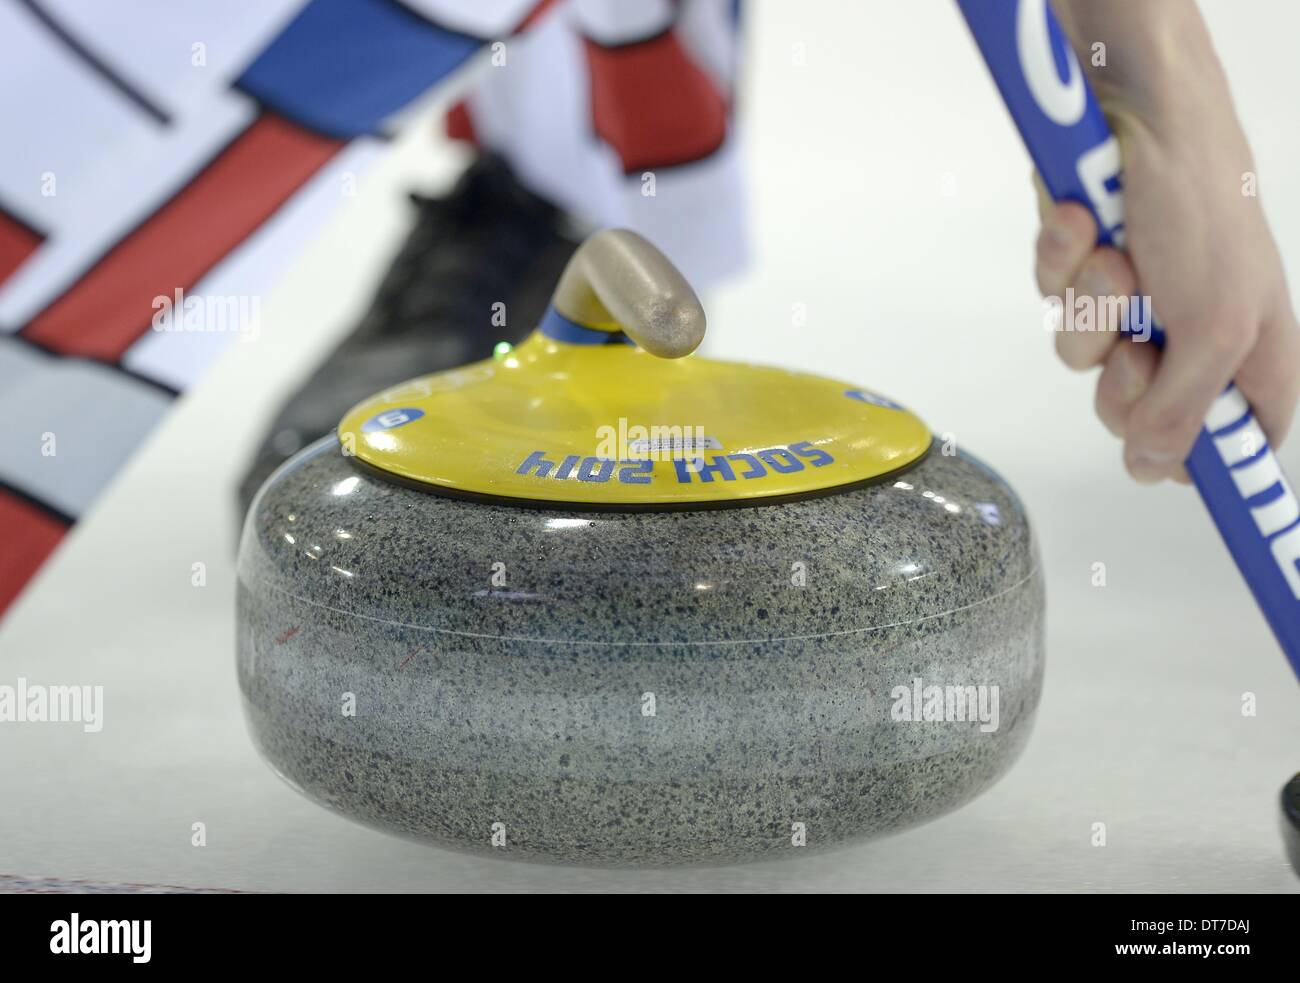 Sochi, Russie. 10 février 2014. La pierre de curling de 2014 à Sotchi. Mens Curling - centre de curling Ice Cube - Parc olympique - Sotchi - Russie - 10/02/2014 Credit : Sport en images/Alamy Live News Banque D'Images